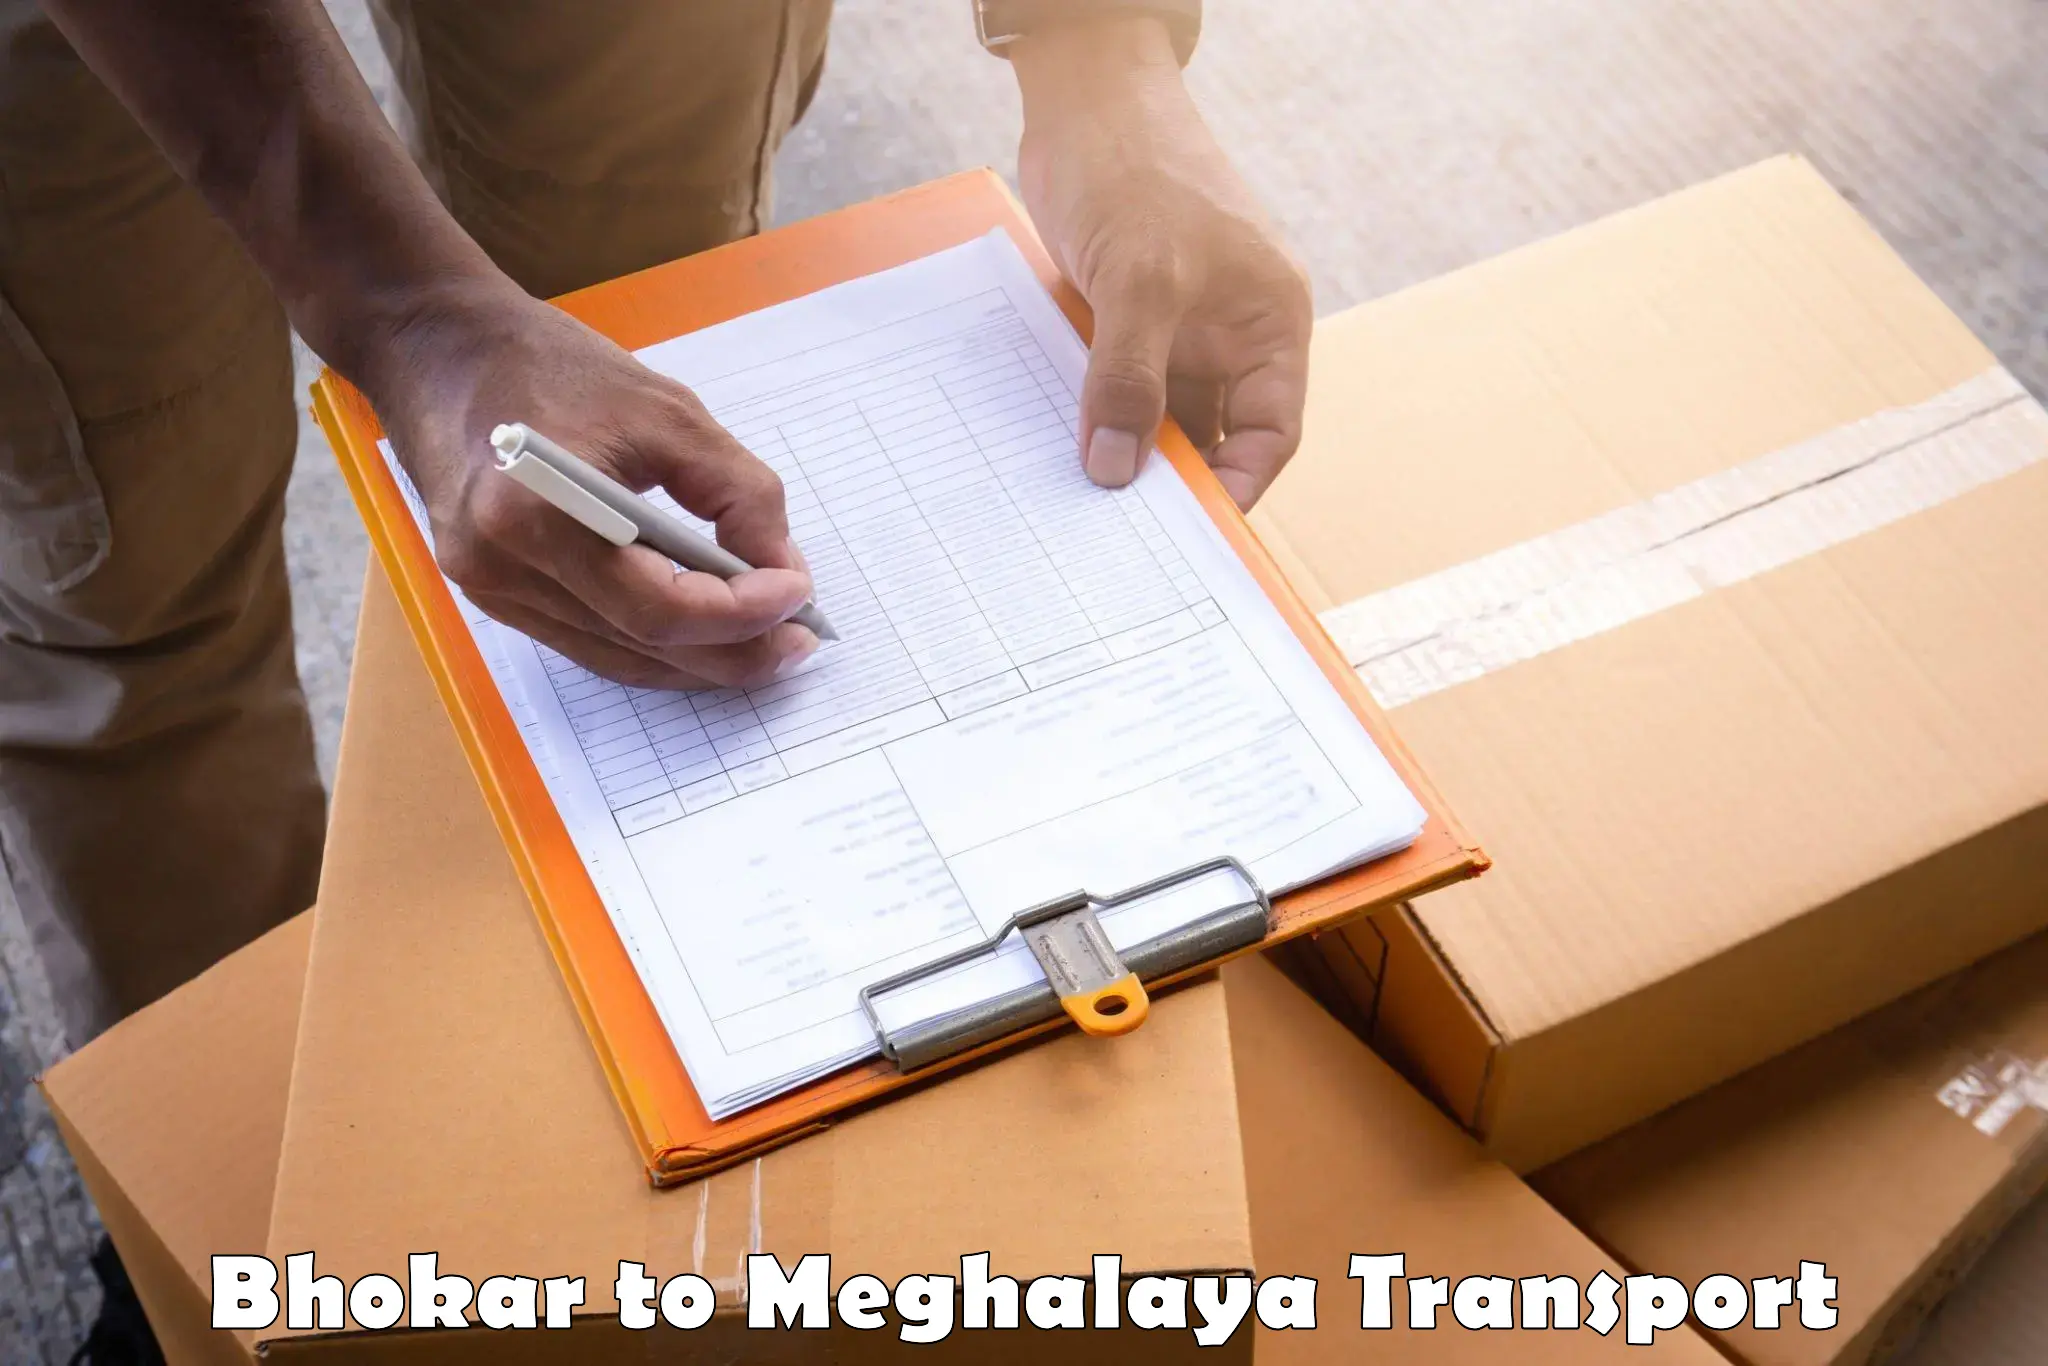 Shipping partner Bhokar to Dkhiah West